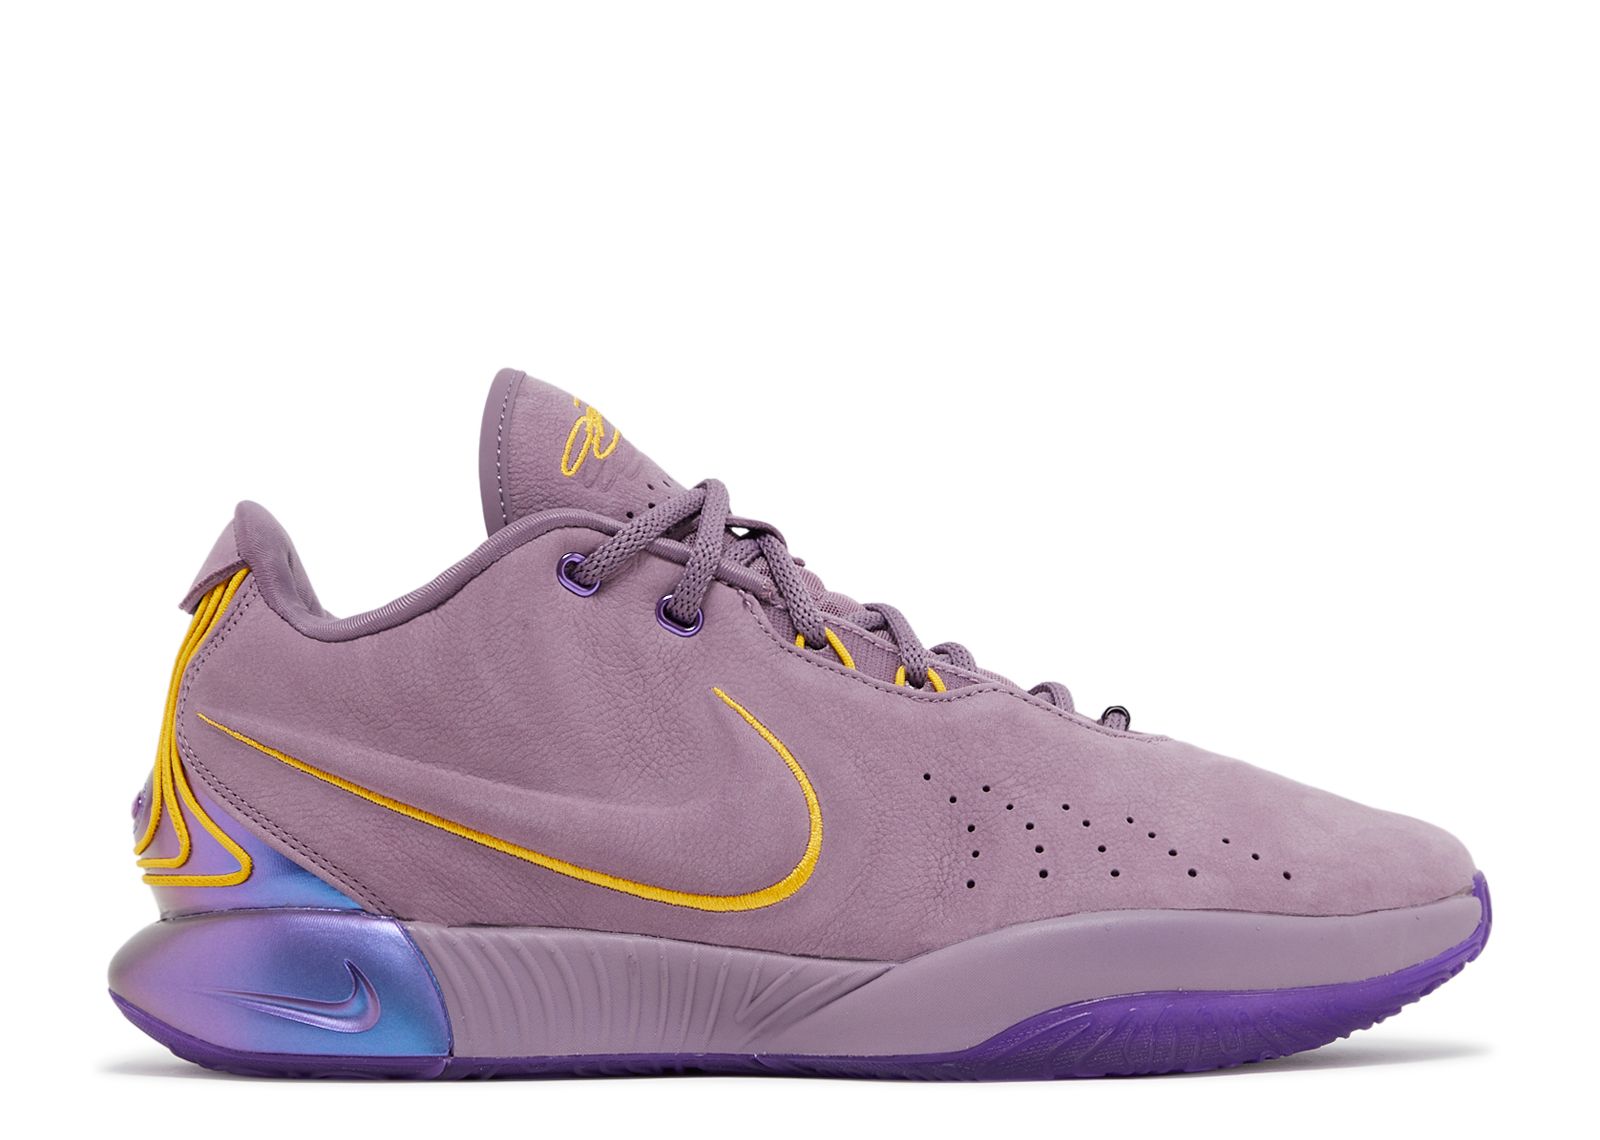 Nike Lebron 21 “Violet Dust” ☔️ Basketball Shoe FV2345-500 US Men Size 7.5